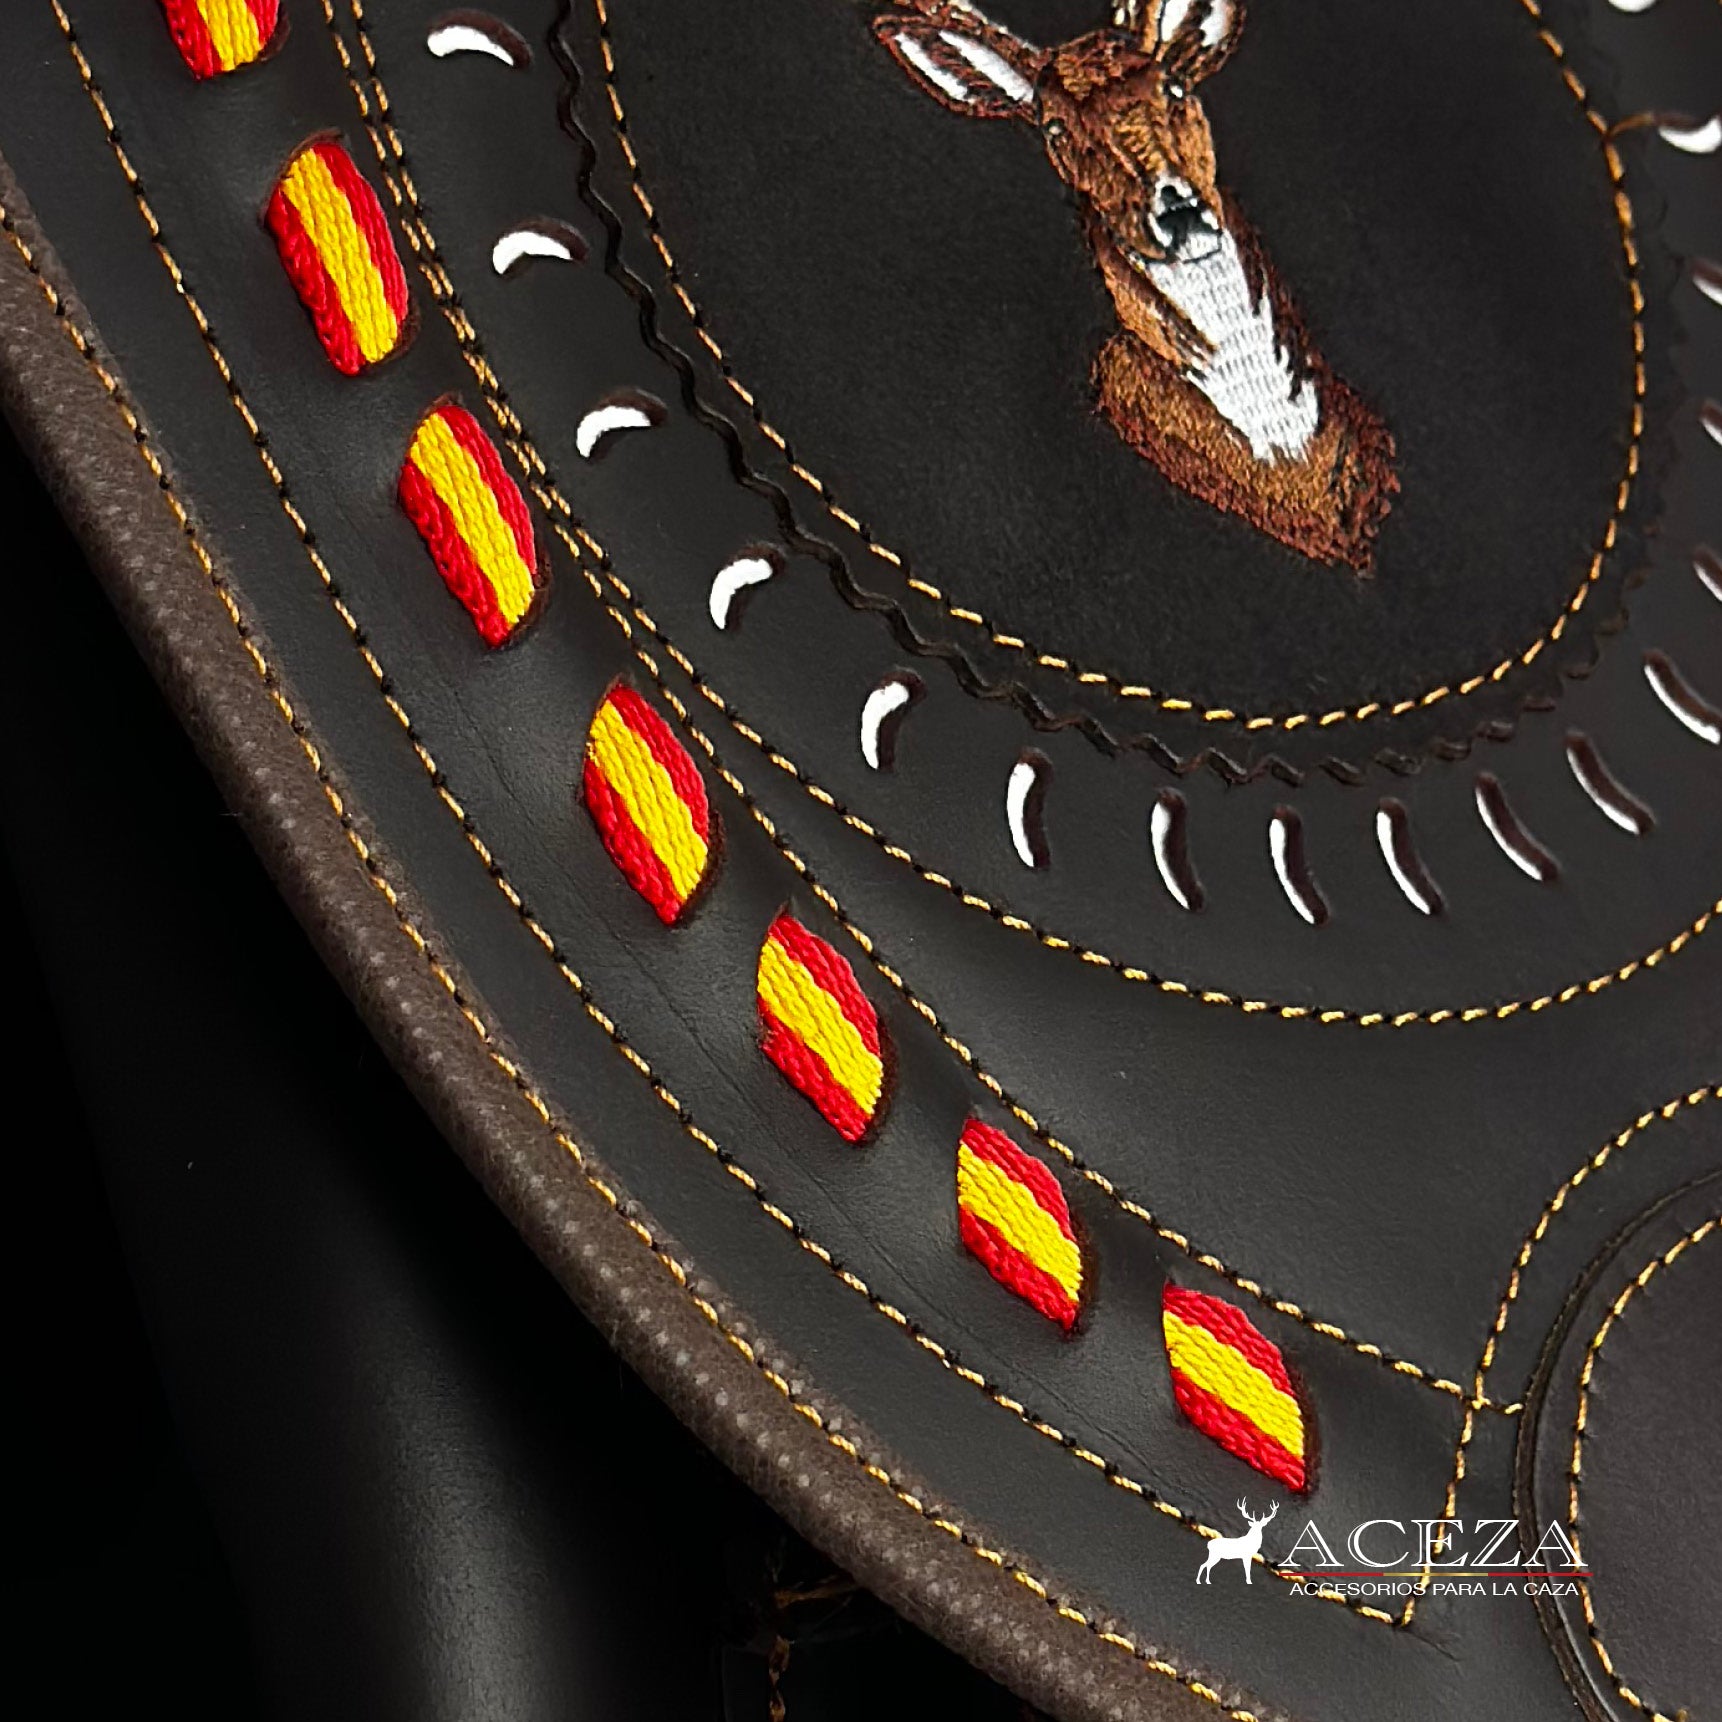 Detalle de la tapa del morral de caza, con bordado de venado y símbolos de la bandera española. Encuentra estilo y tradición en ACEZA para tus salidas al campo.